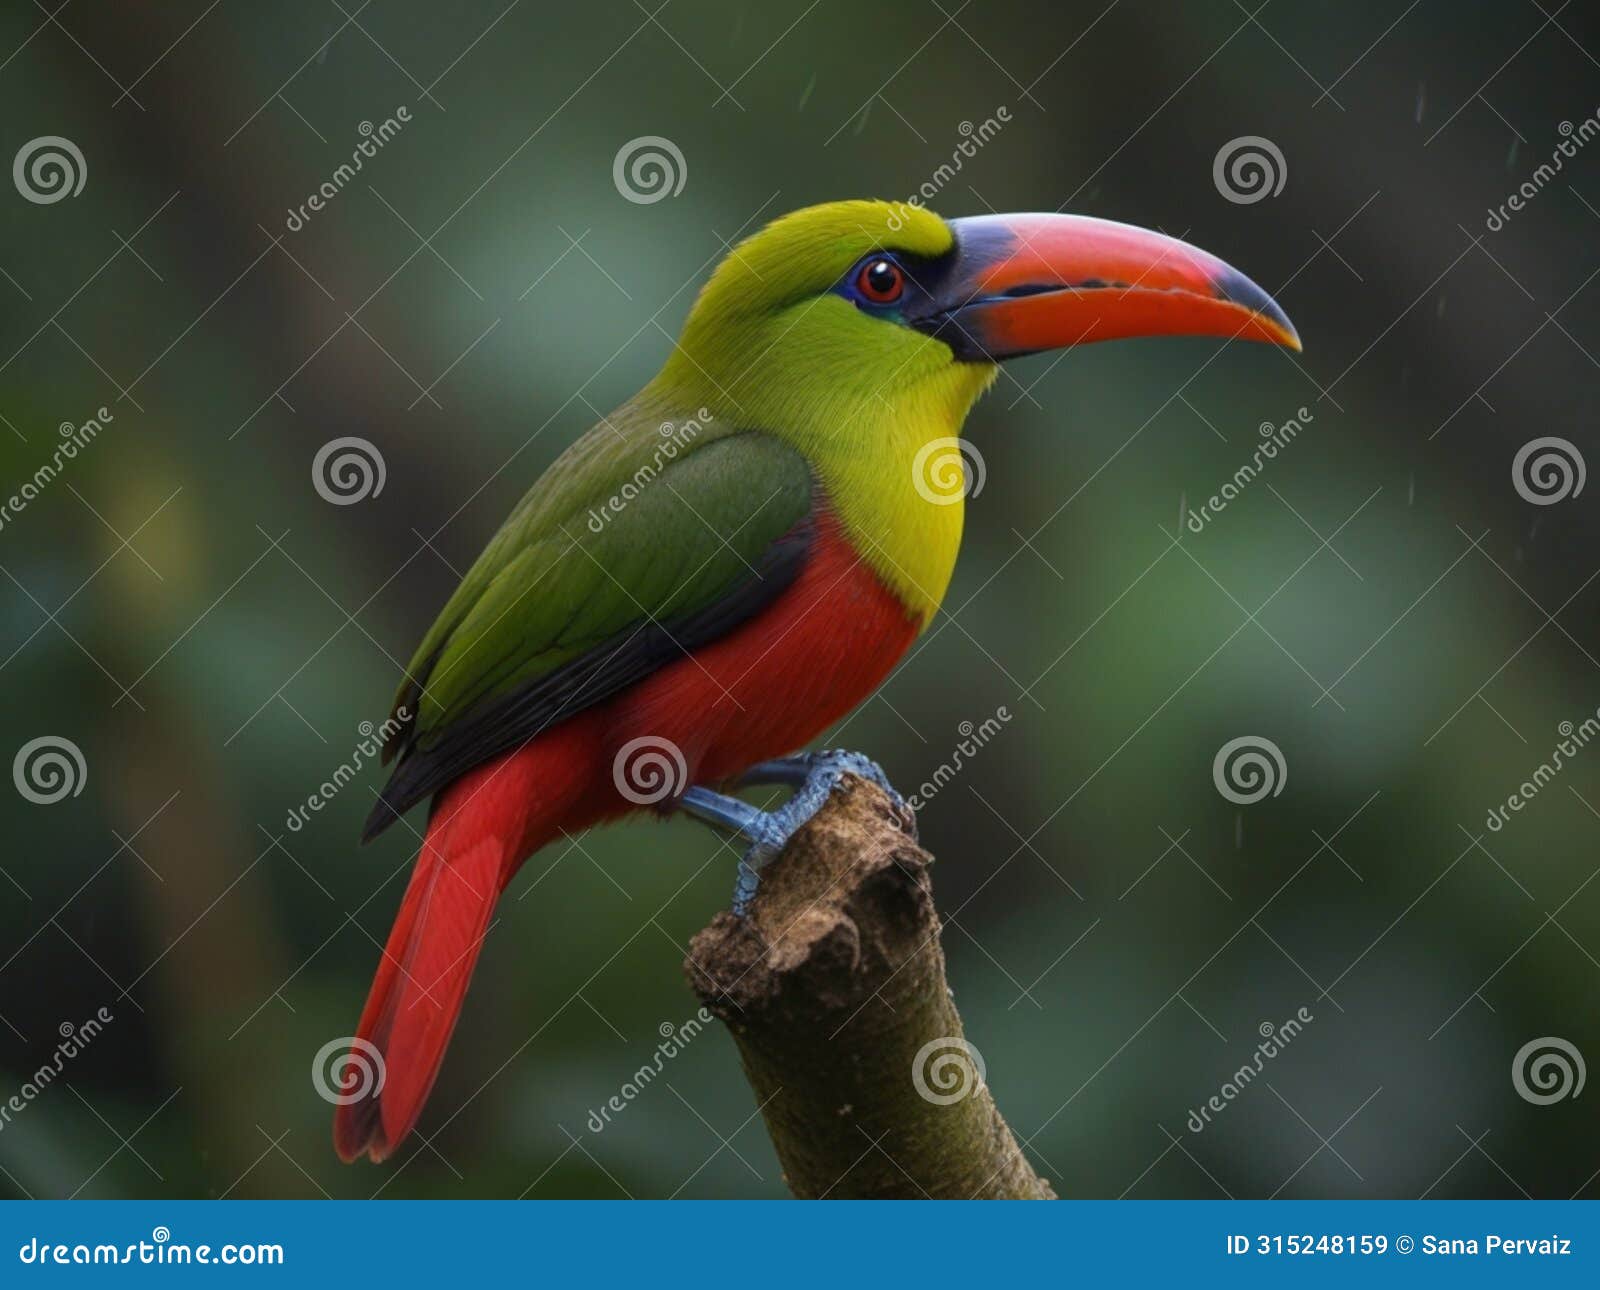 the crimson rumped toucanet is a bird of the ecuadorian rain forest